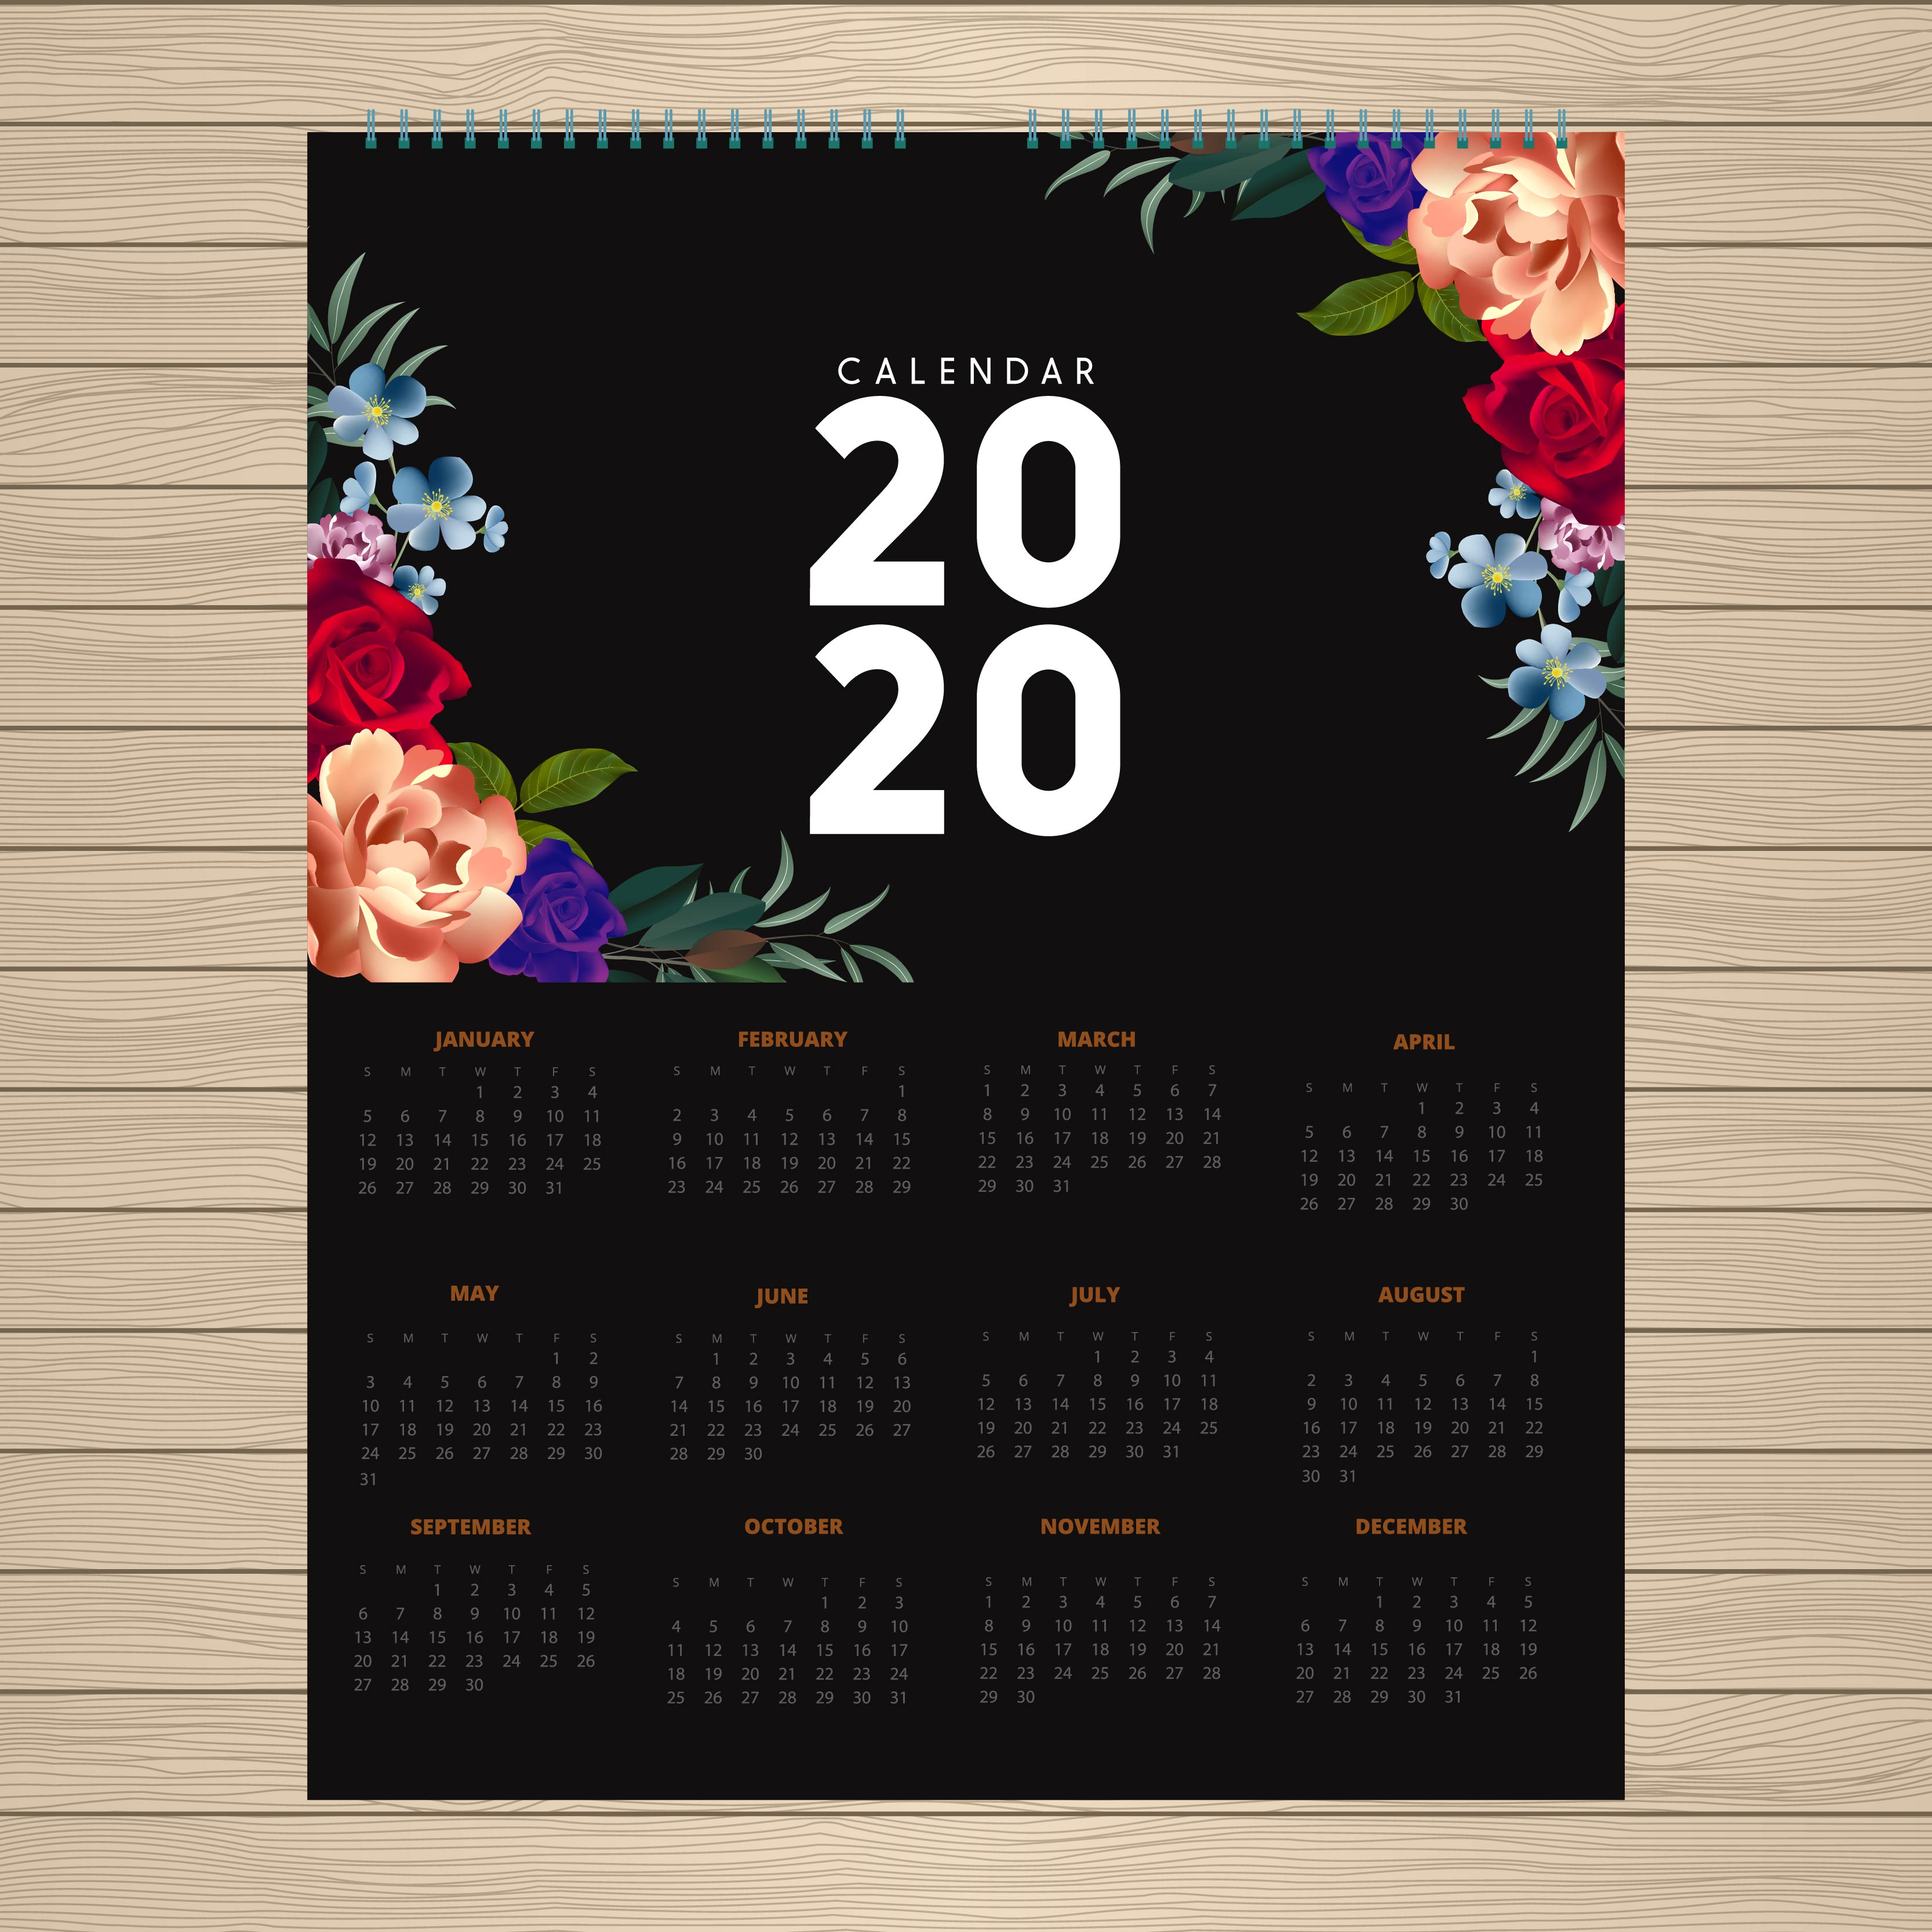 Baixar Vetor De Design Do Calendário Do Ano 2020 Da Flor